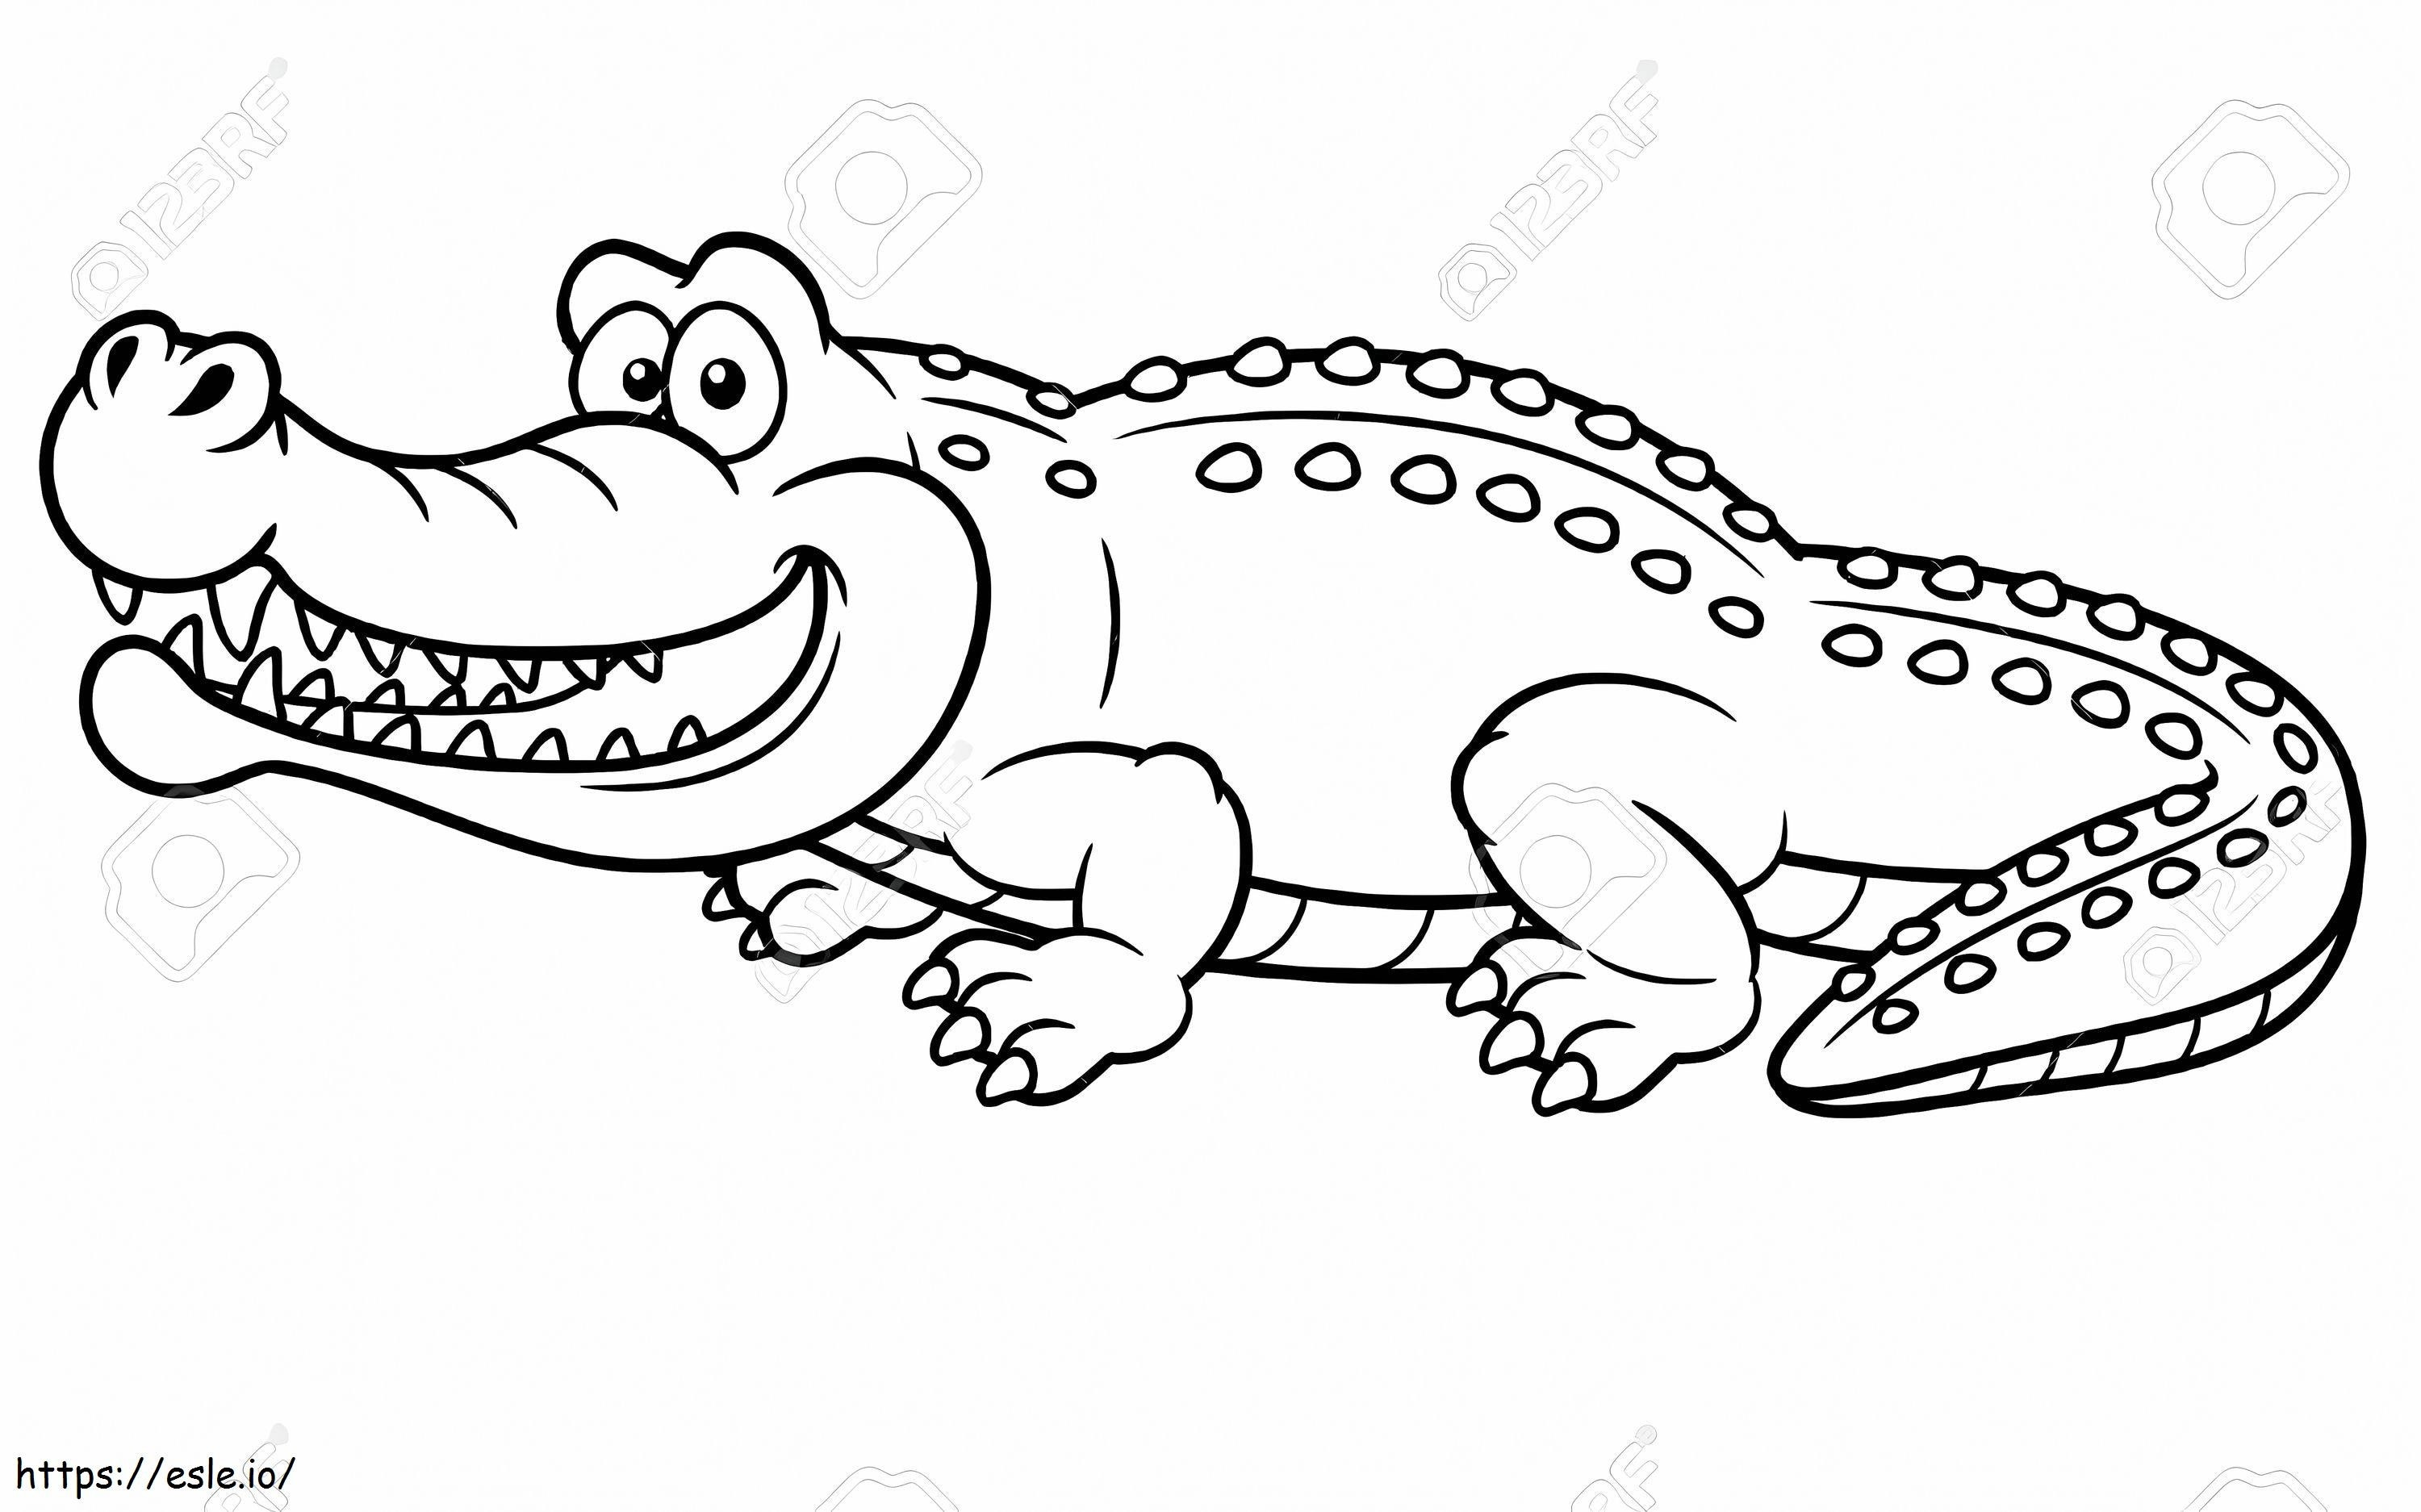 Happy Crocodile coloring page